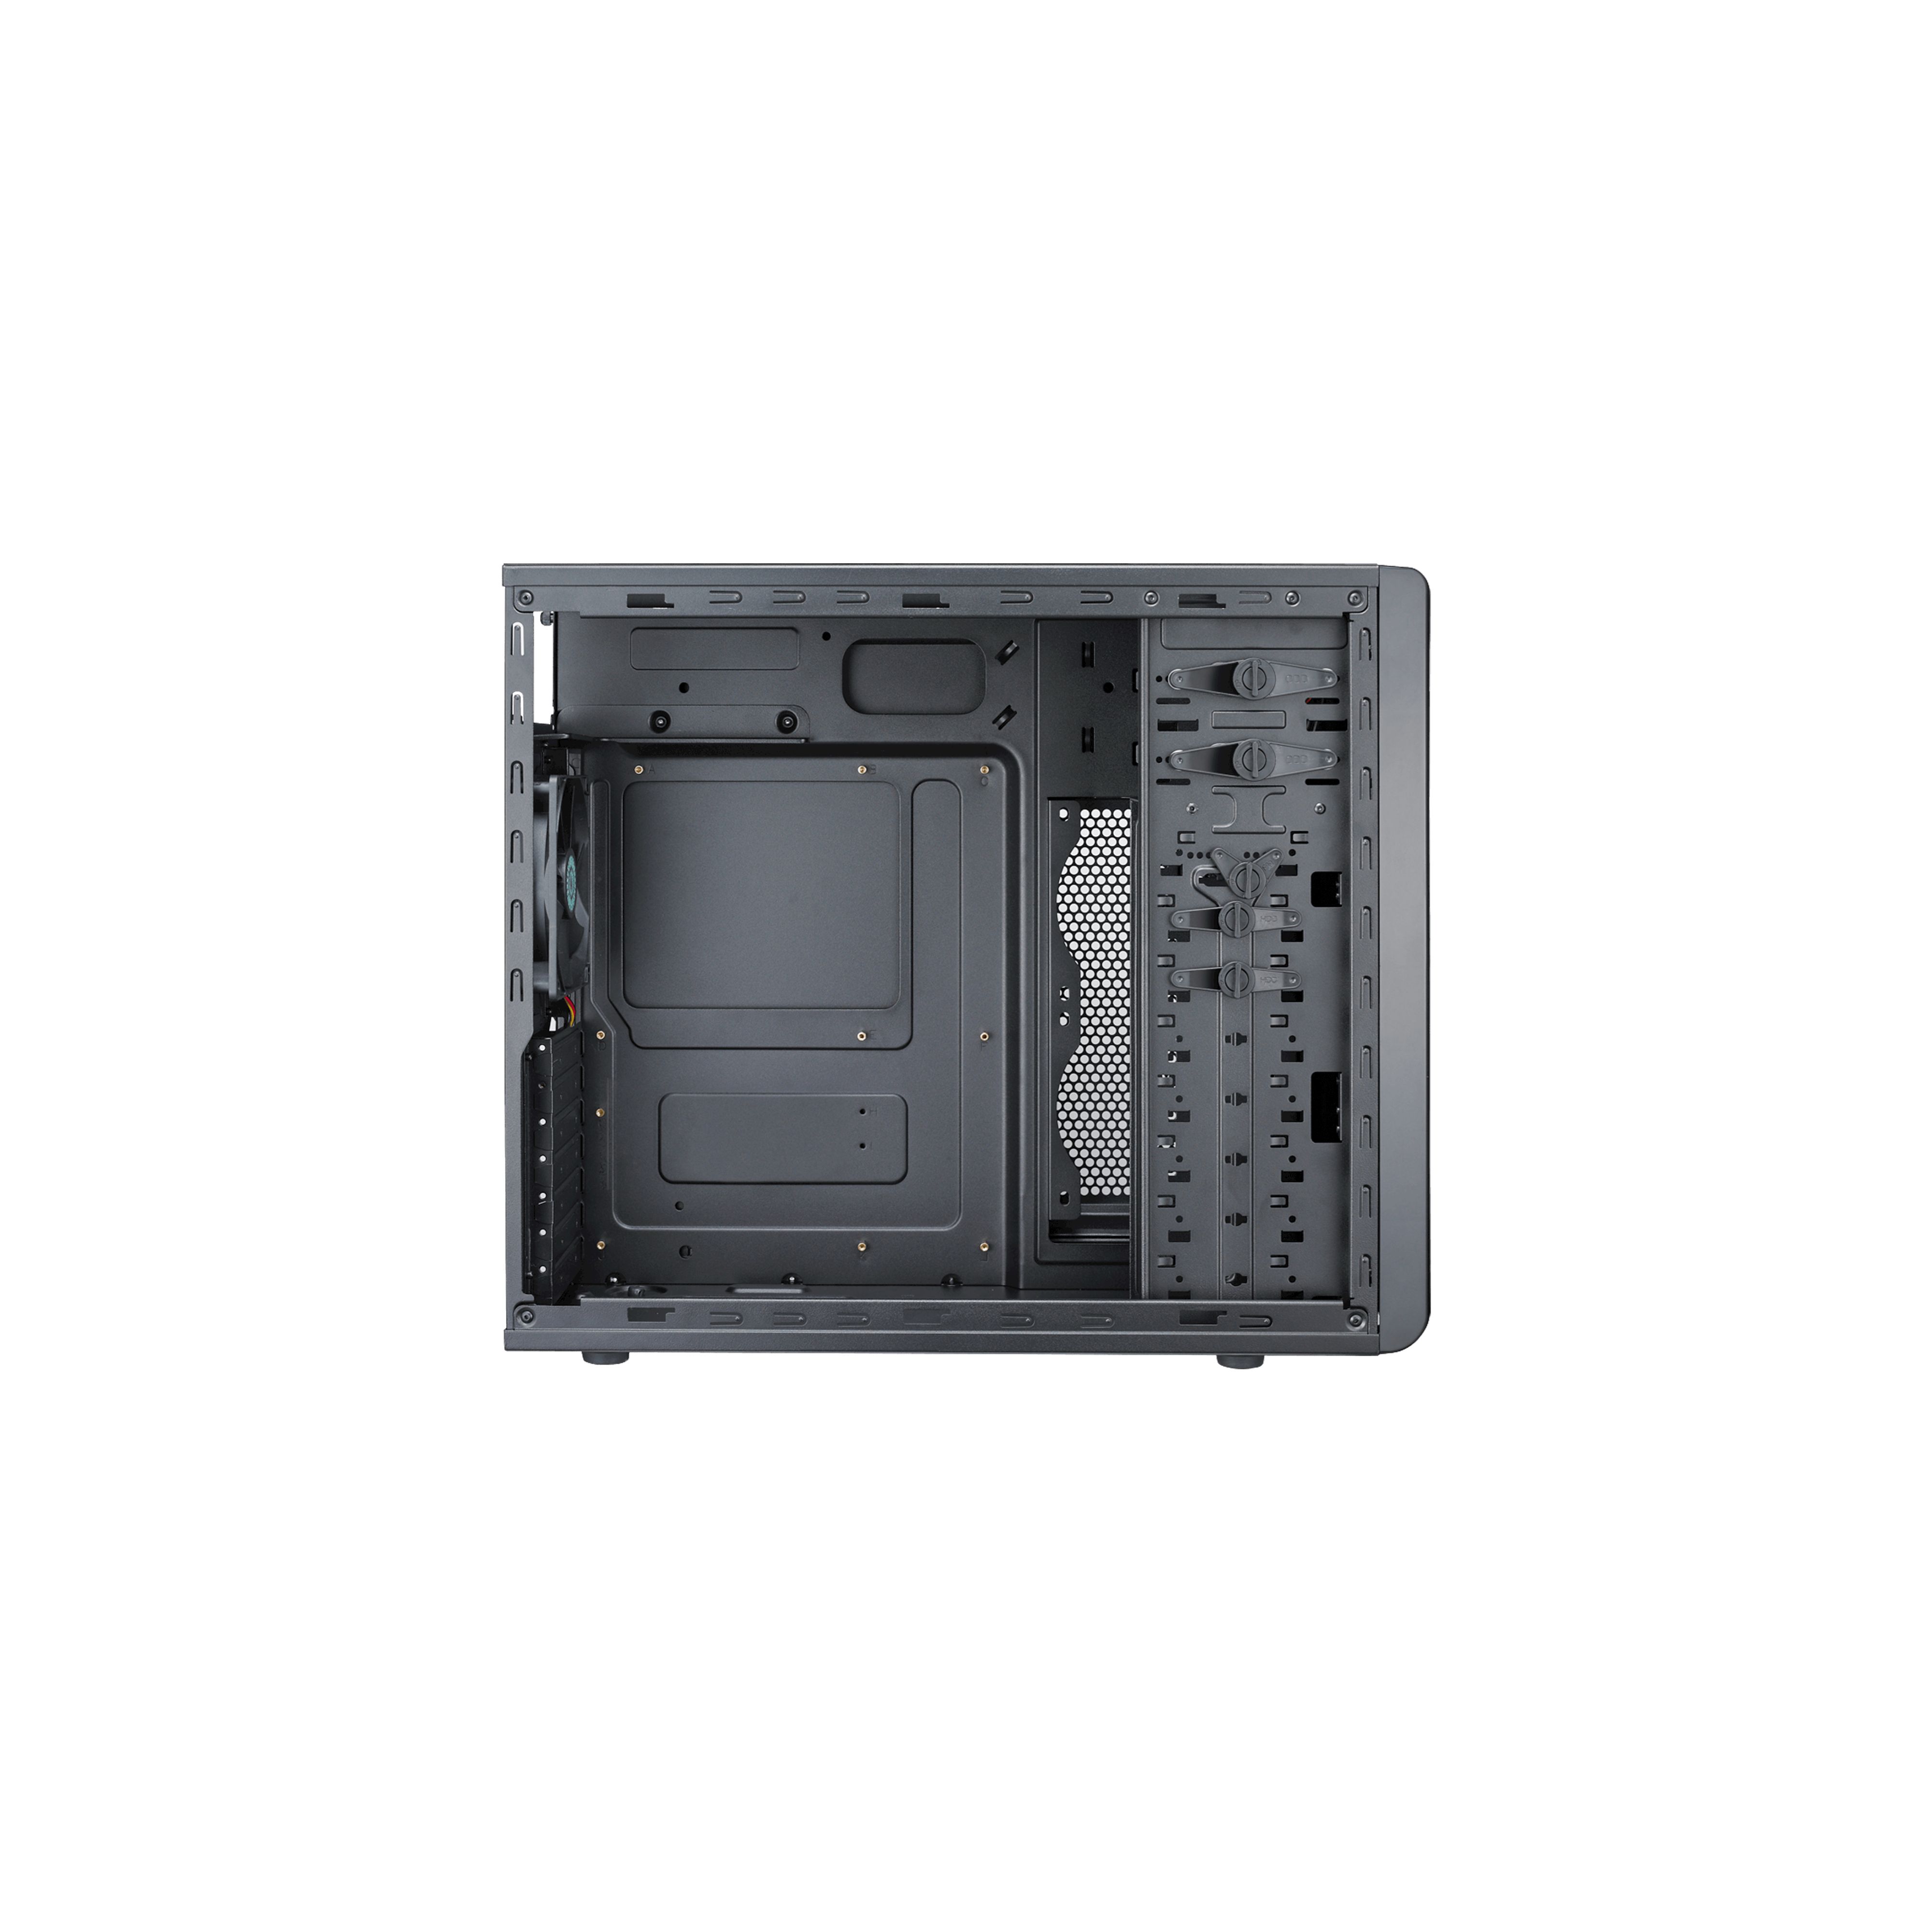 COOLMASTER FOR-500-KKN1 Cooler Master computer case CM Force 500 black ( without PSU )_3